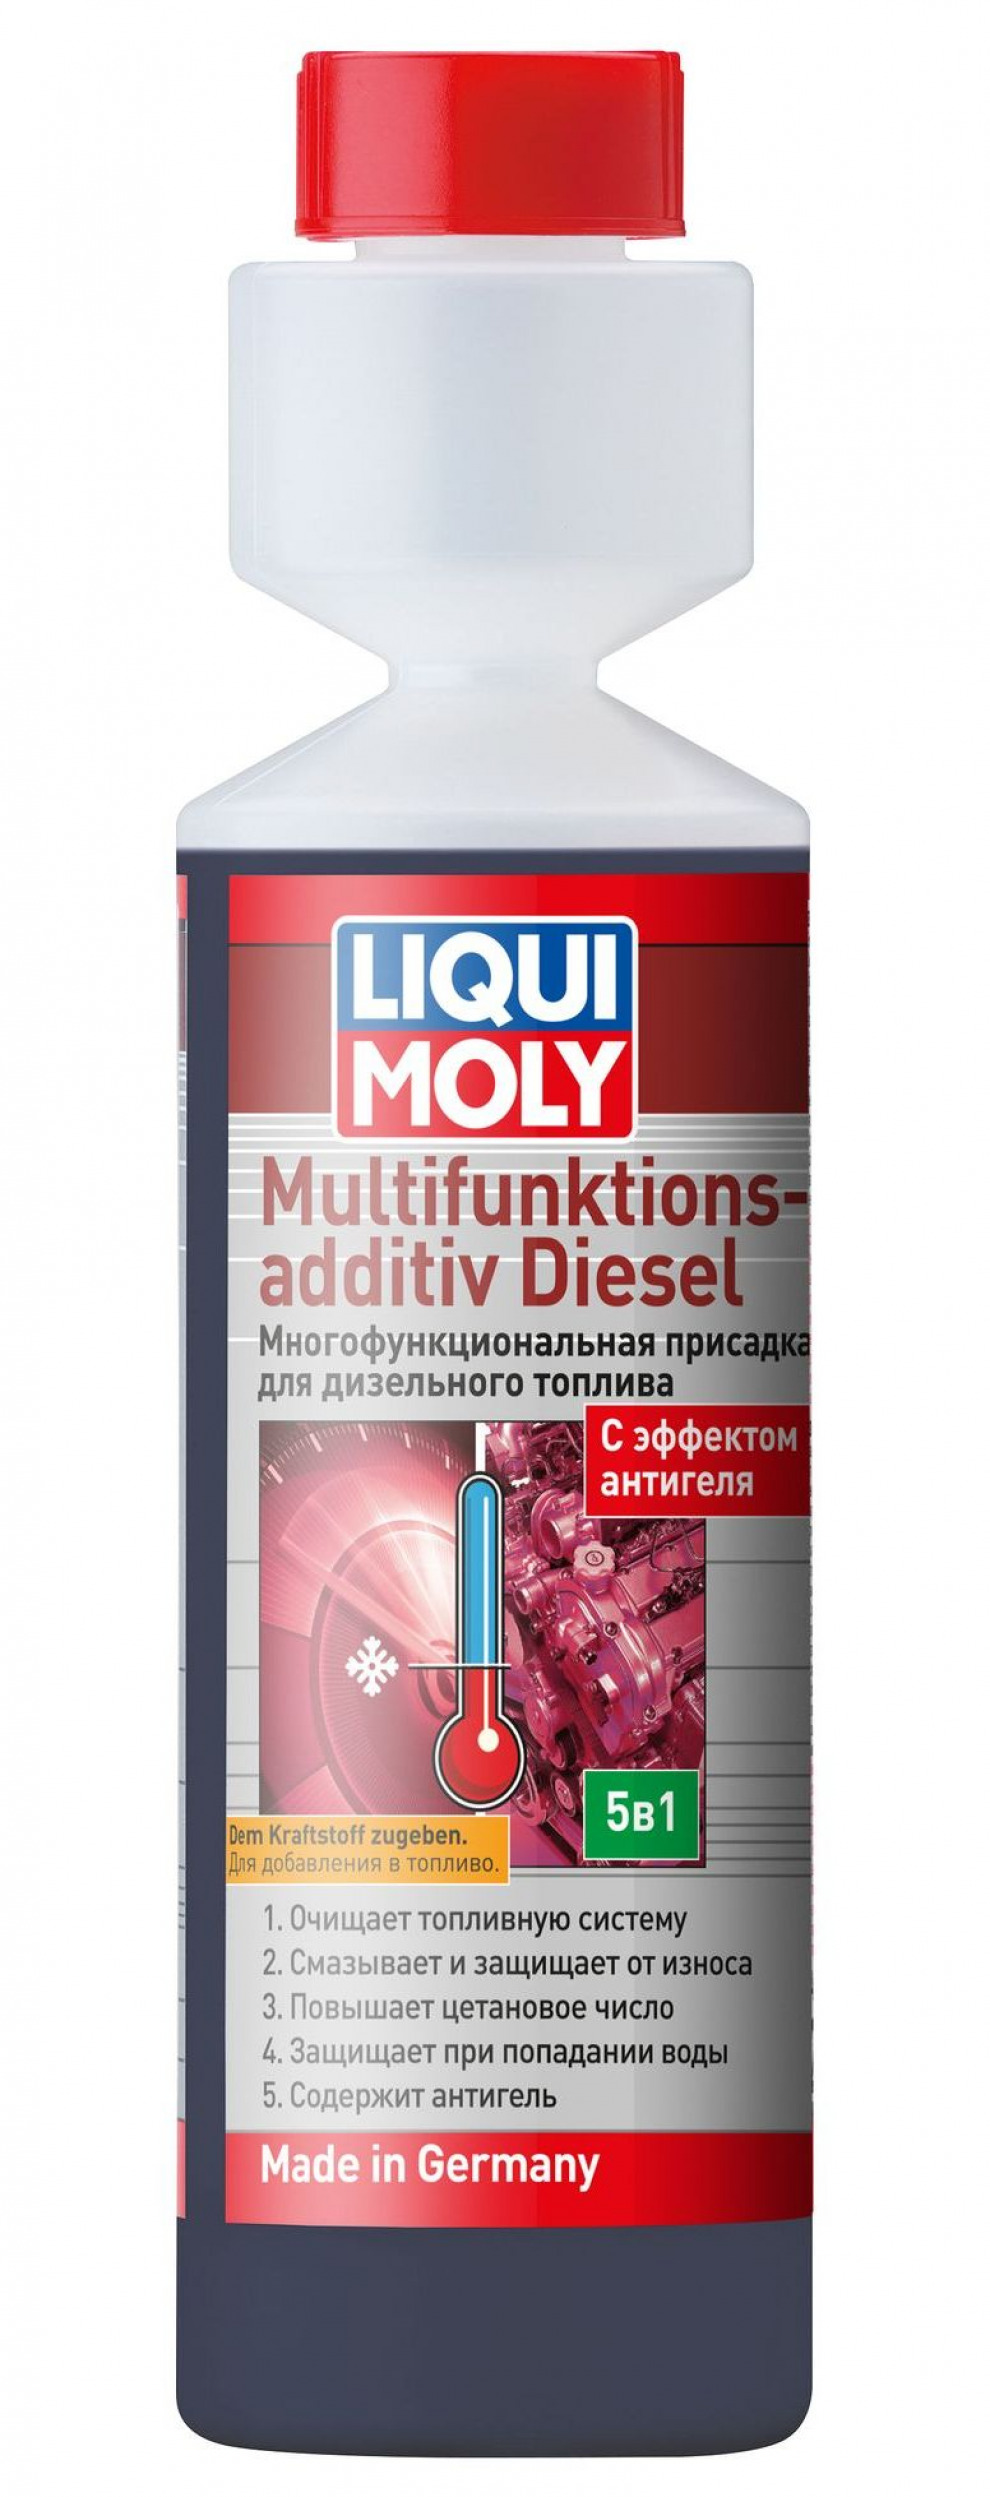 Многофункциональная присадка Liqui Moly для дизельного топлива Multifunktionsadditiv Diesel